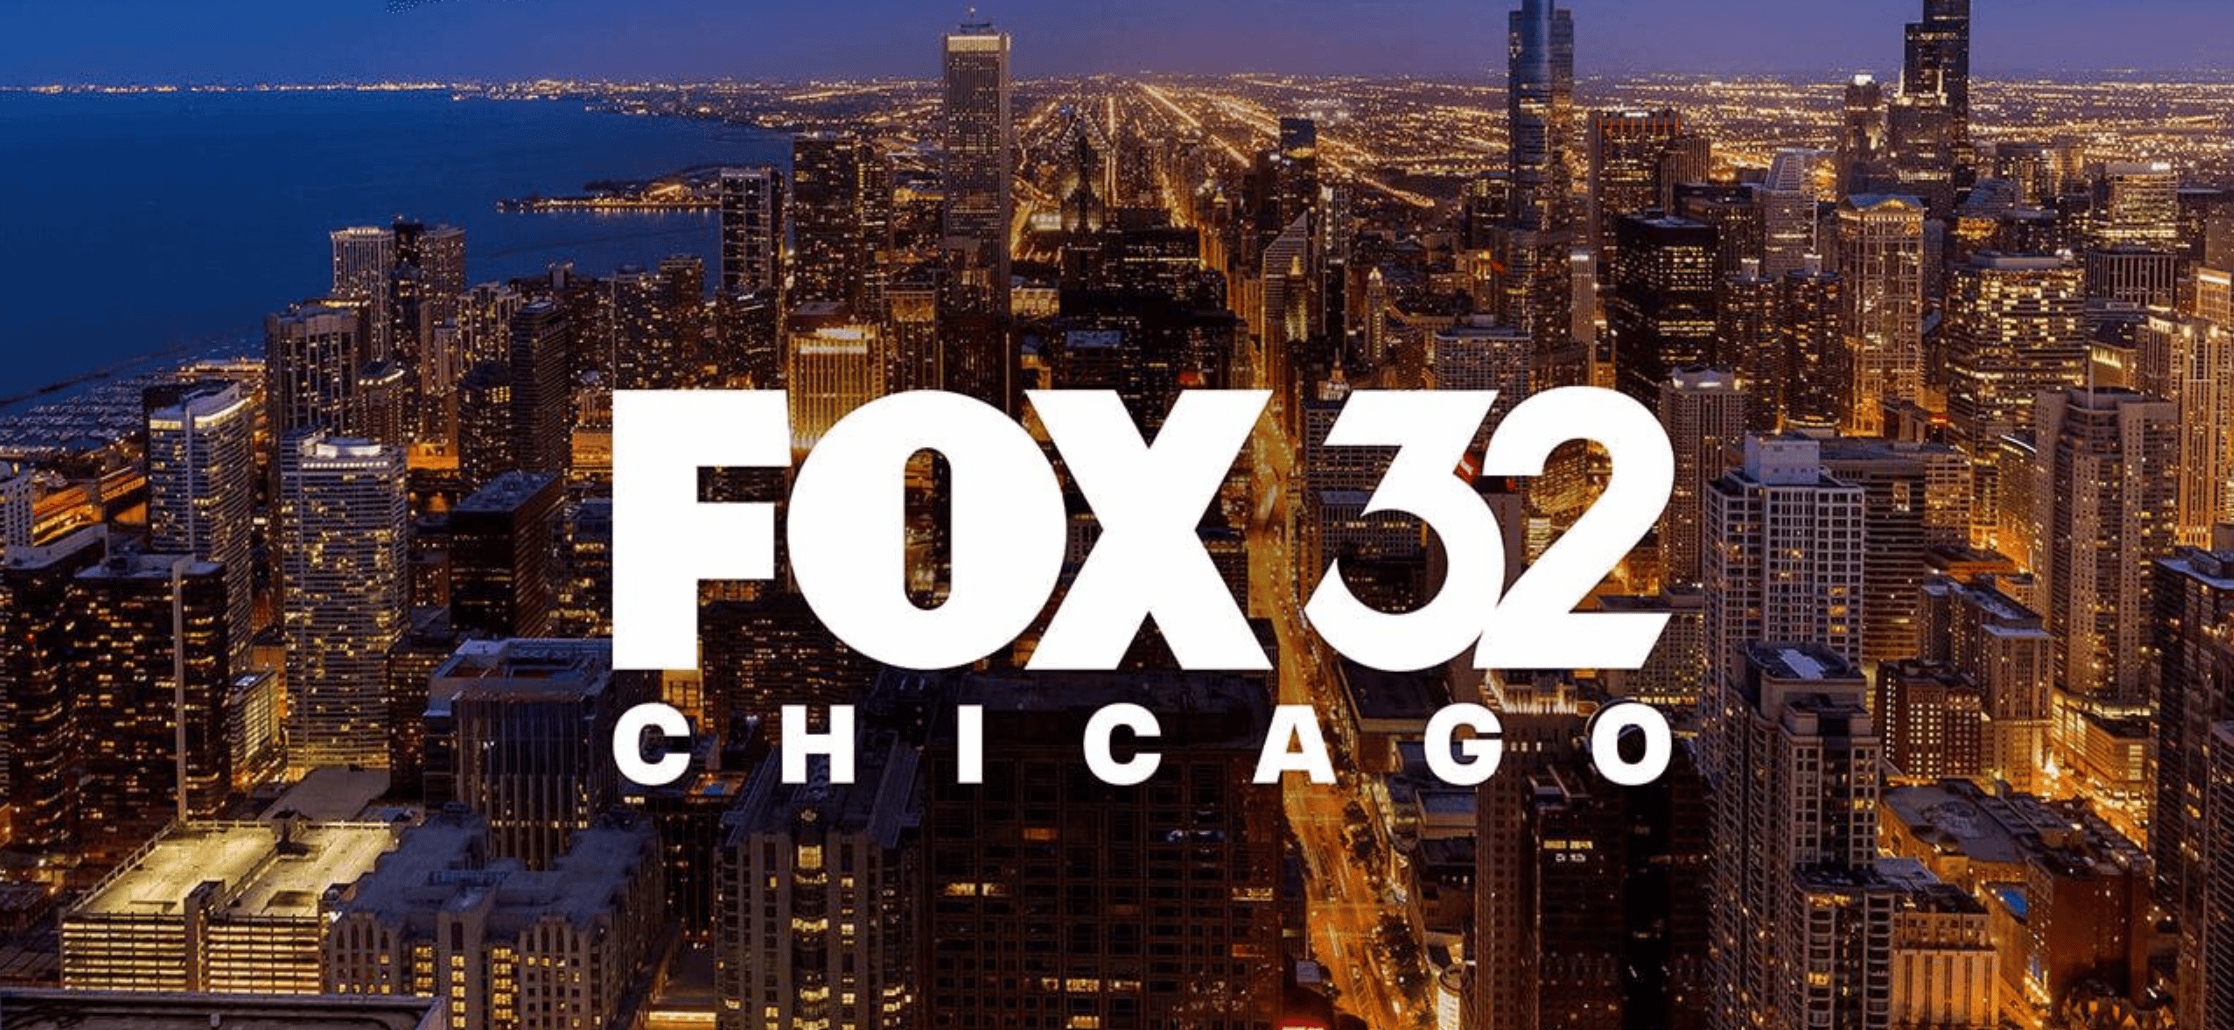 Honest Game on Fox 32 Chicago